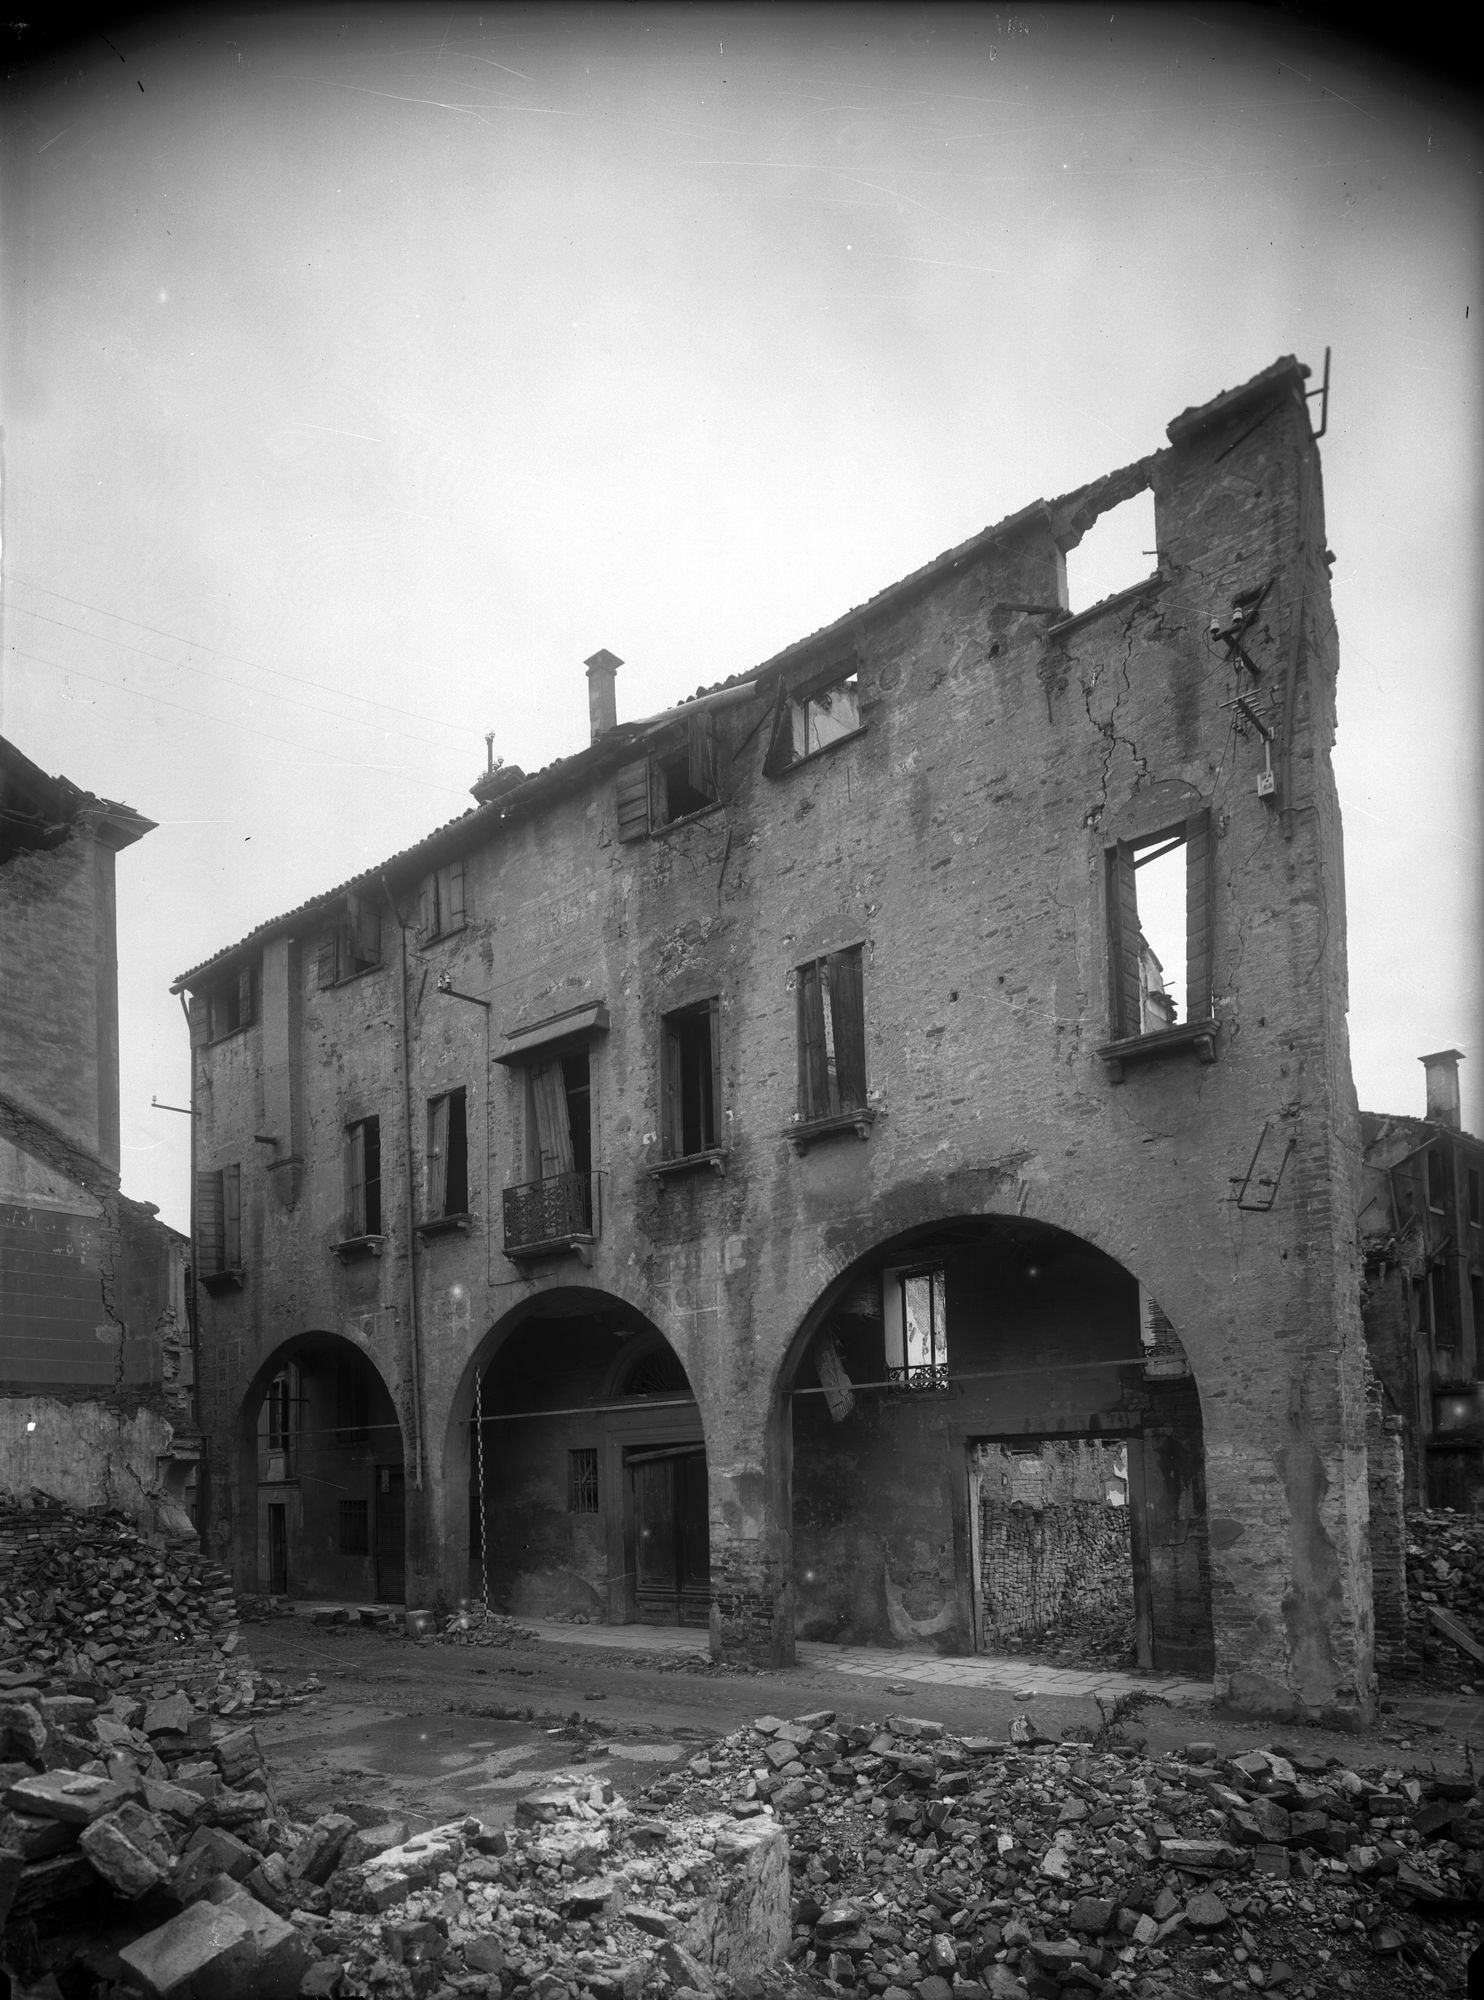 Via Collalto. La casa segnata col n. 18-22 dopo il bombardamento (negativo) di Gabinetto fotografico (XX)